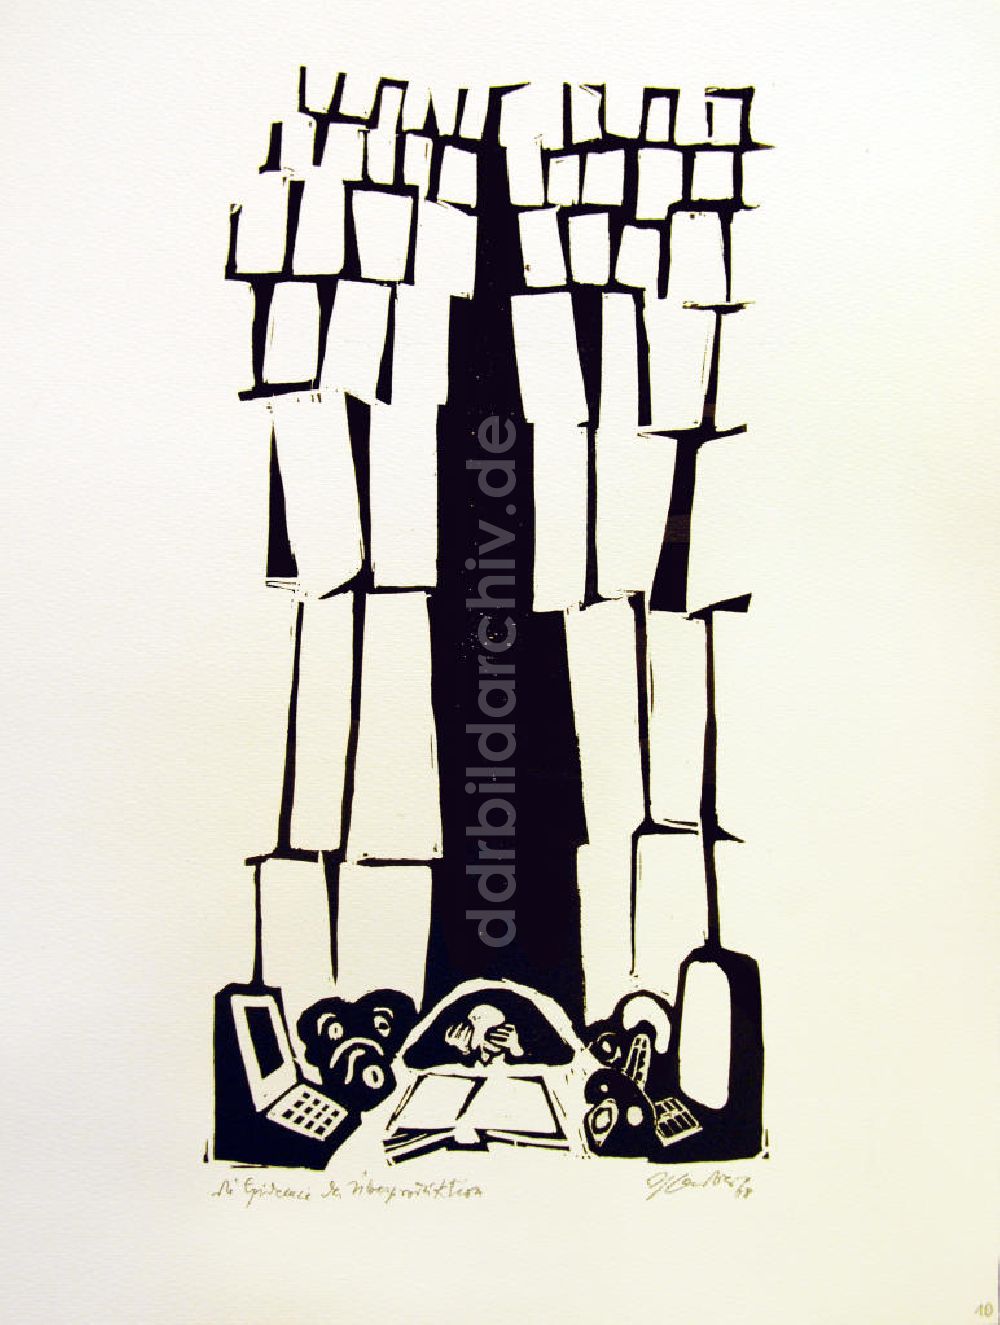 Berlin: Grafik von Herbert Sandberg Motiv 11 aus dem Zyklus Bilder zum Kommunistischen Manifest aus dem Jahr 1968